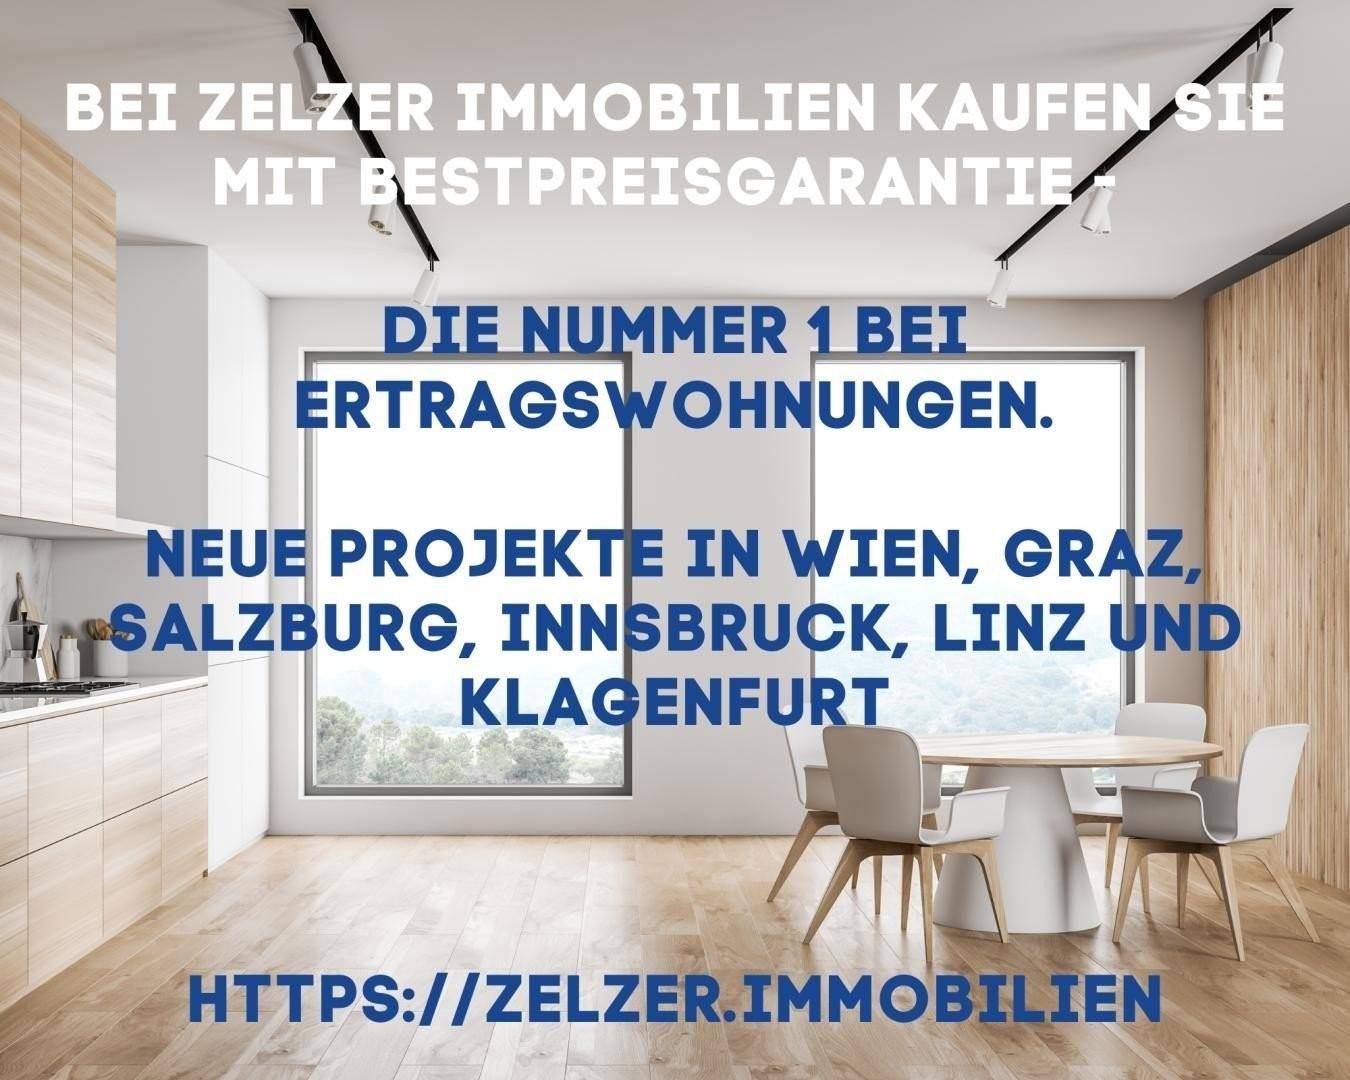 Ertragswohnungen_Zelzer Immobilienn_5.jpg